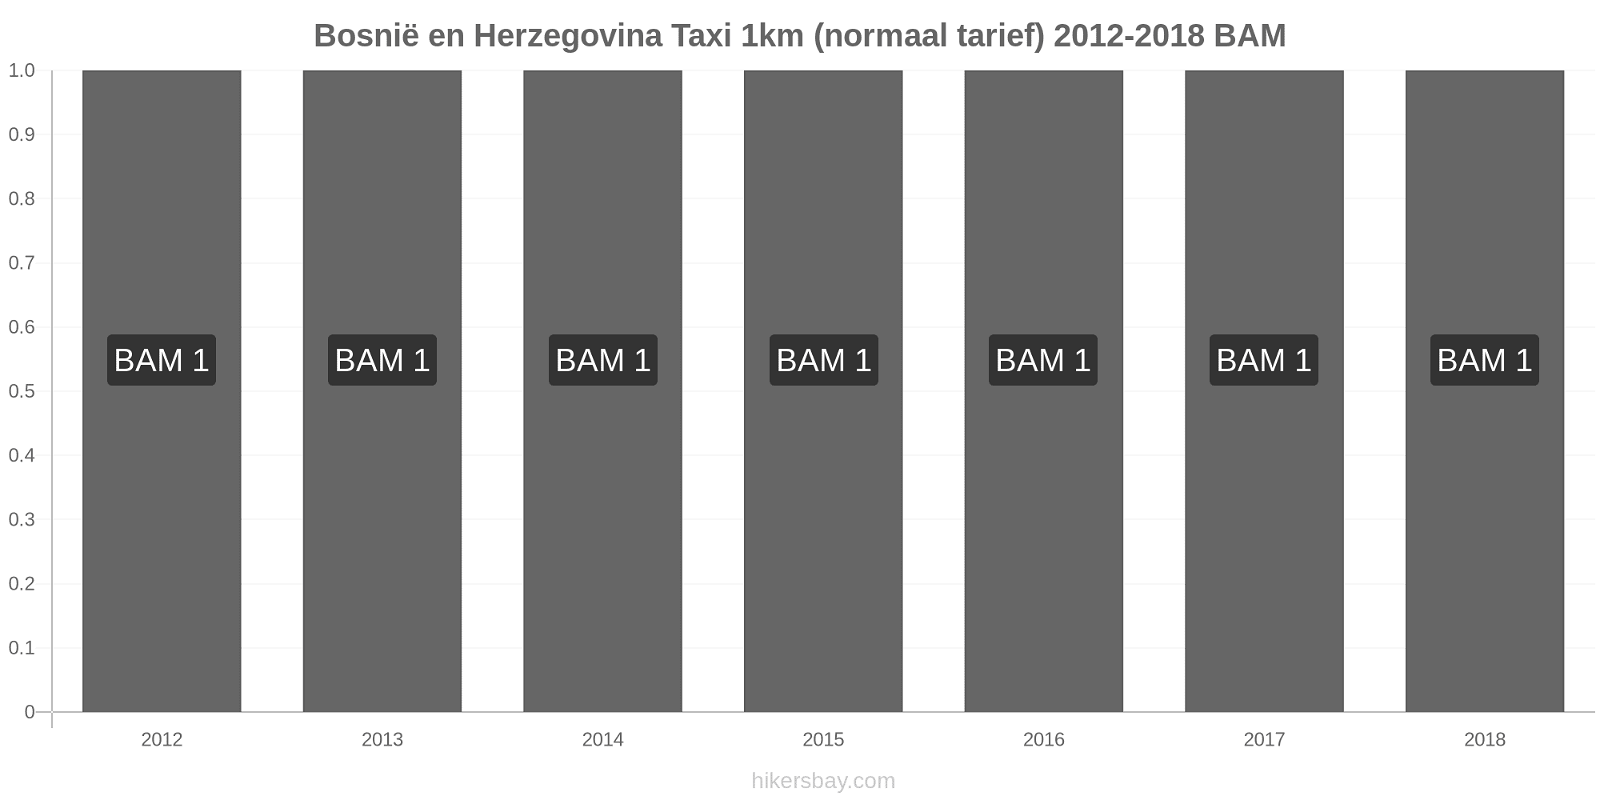 Bosnië en Herzegovina prijswijzigingen Taxi 1km (normaal tarief) hikersbay.com